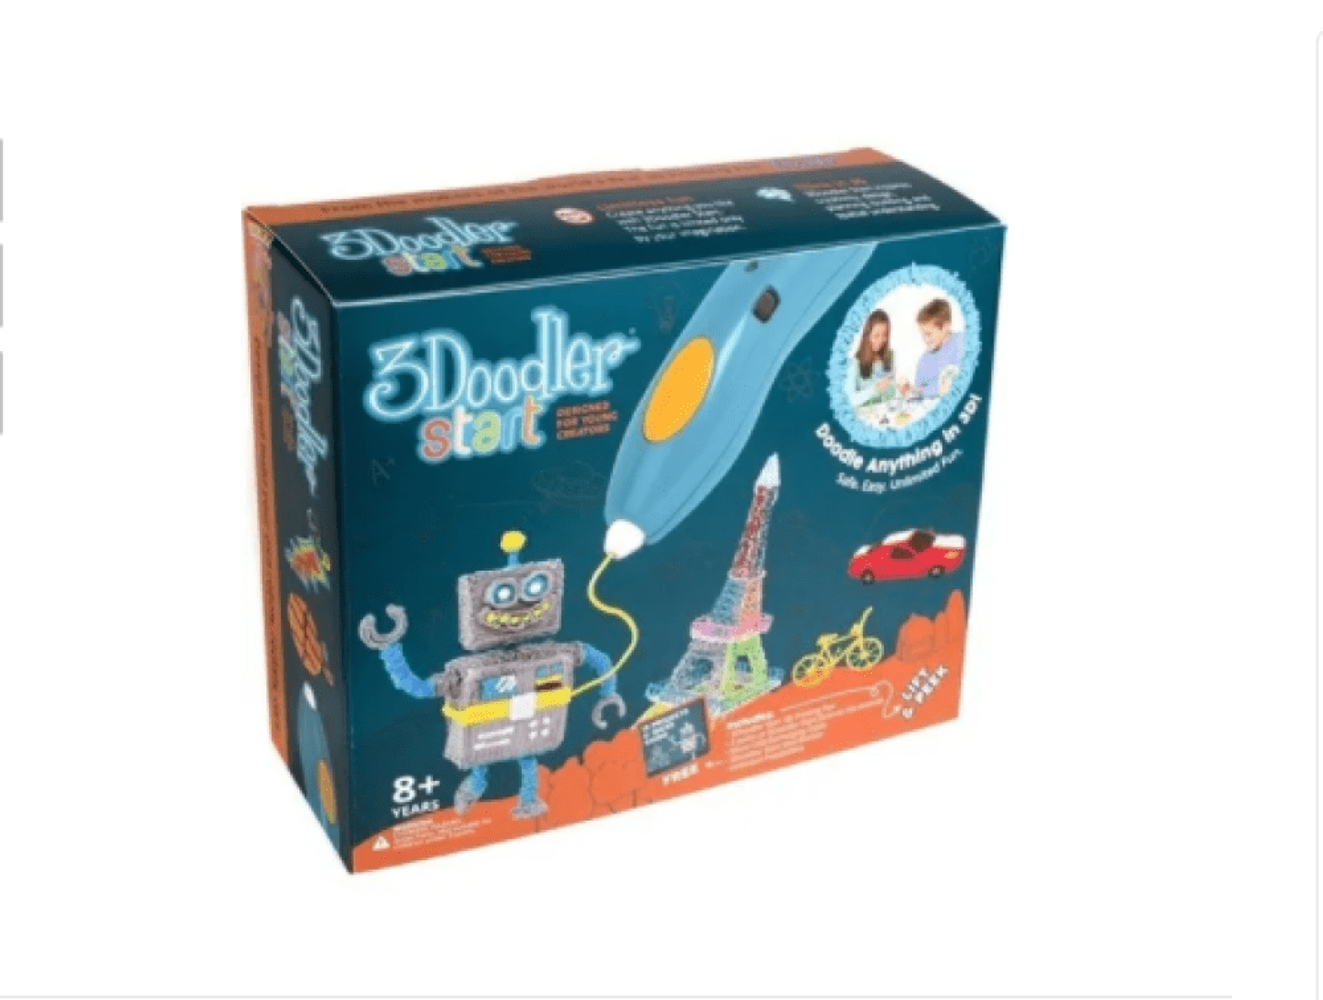 Pack Mega 3Doodler Start, lápiz 3D para niños